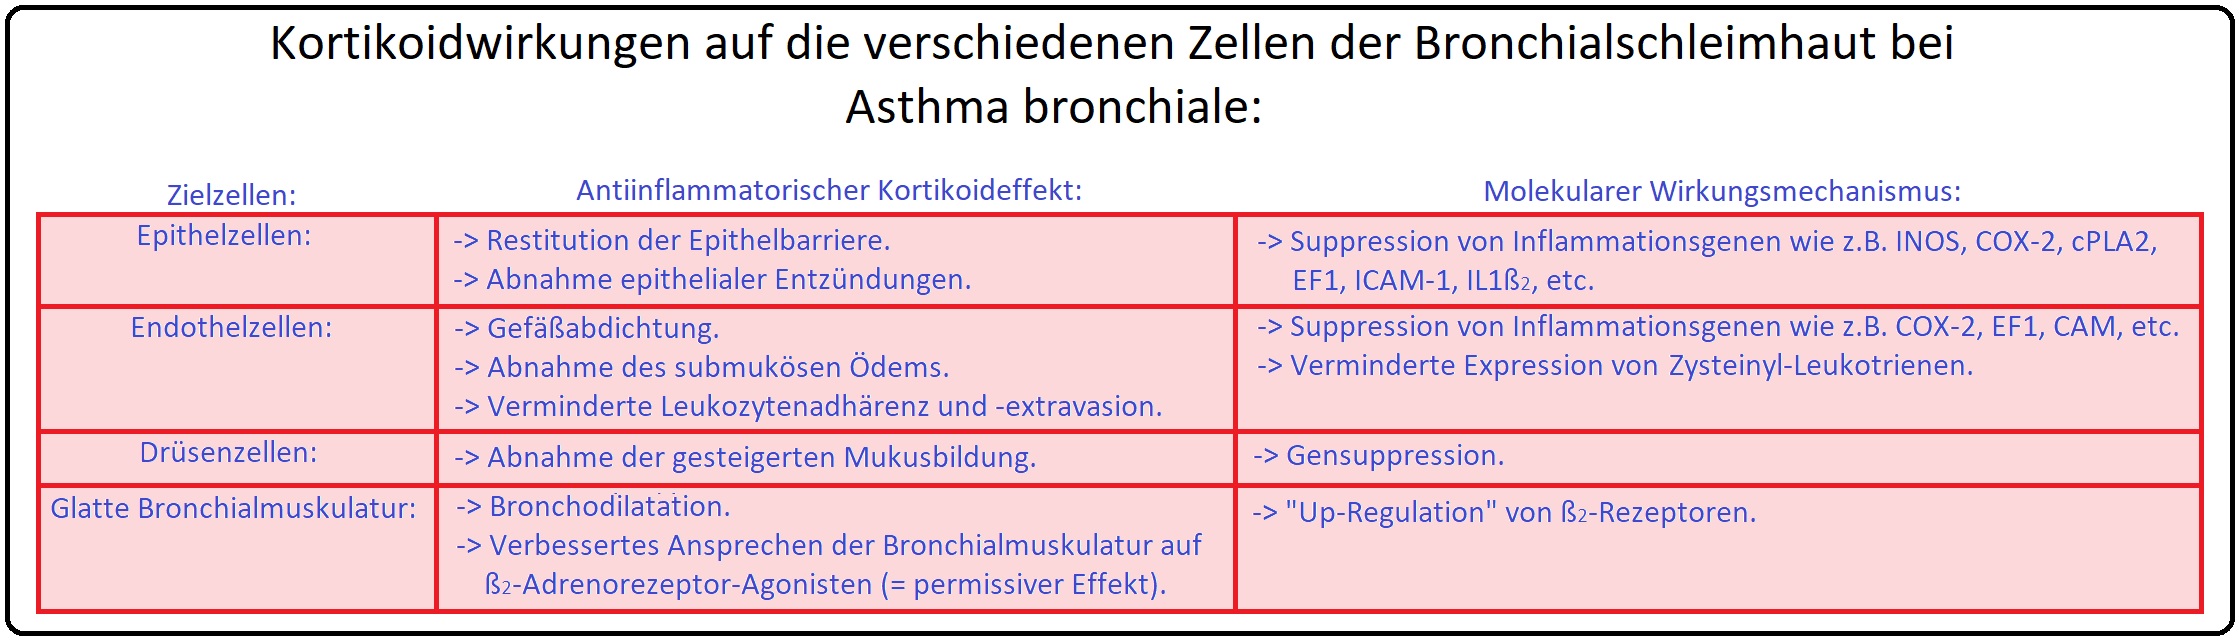 124 Kortikoidwirkung auf die verschiedenen Zellen der Bronchialschleimhaut bei Asthma bronchiale